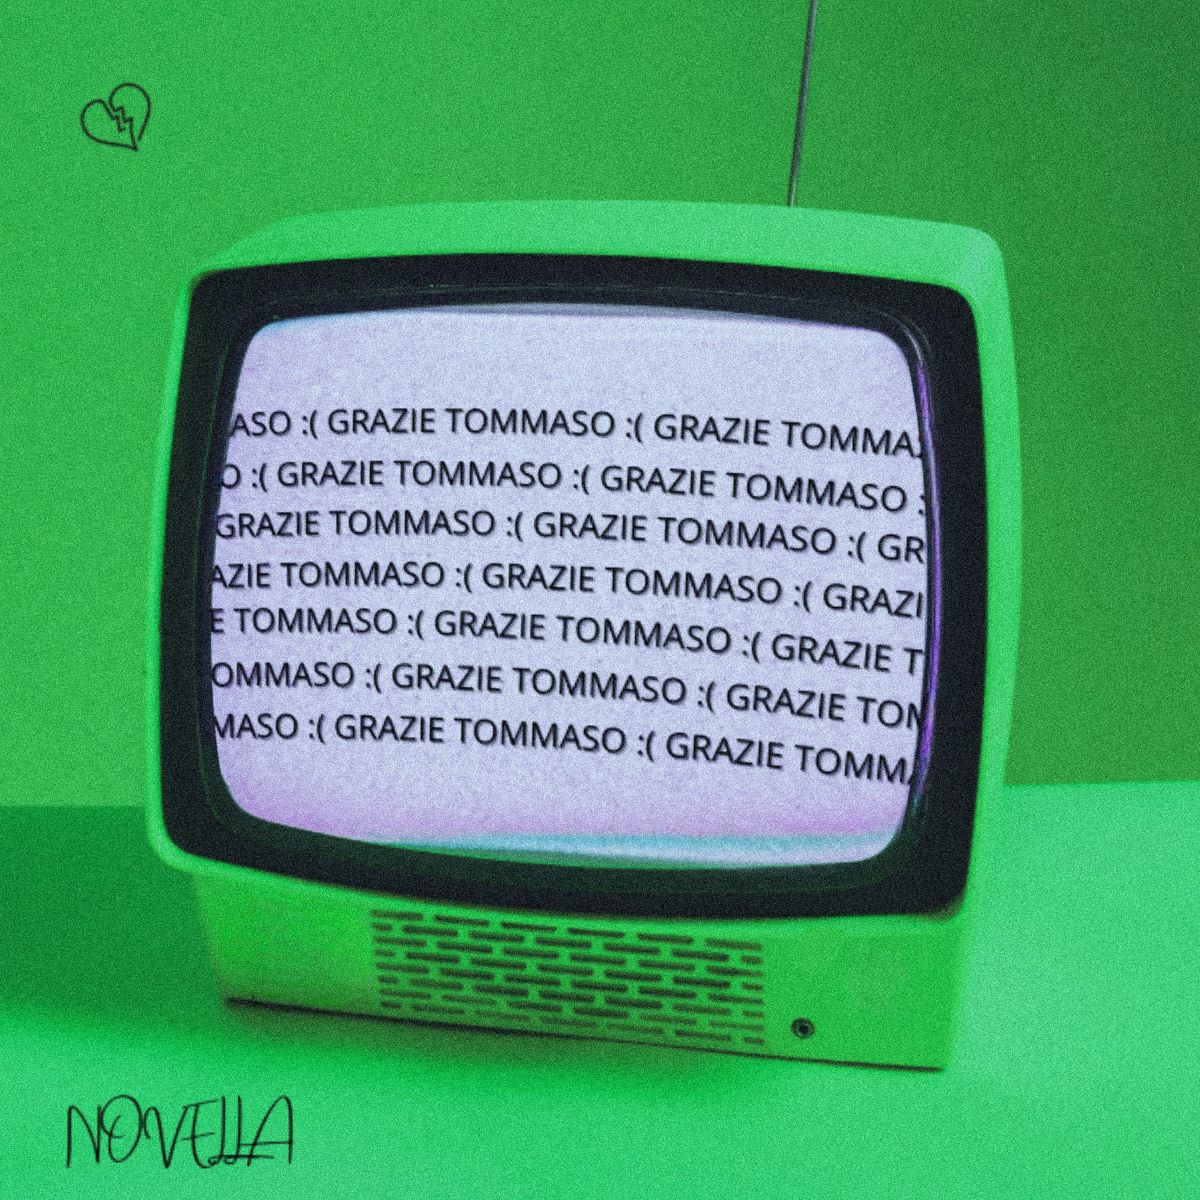 Novella - Il singolo “Grazie Tommaso”